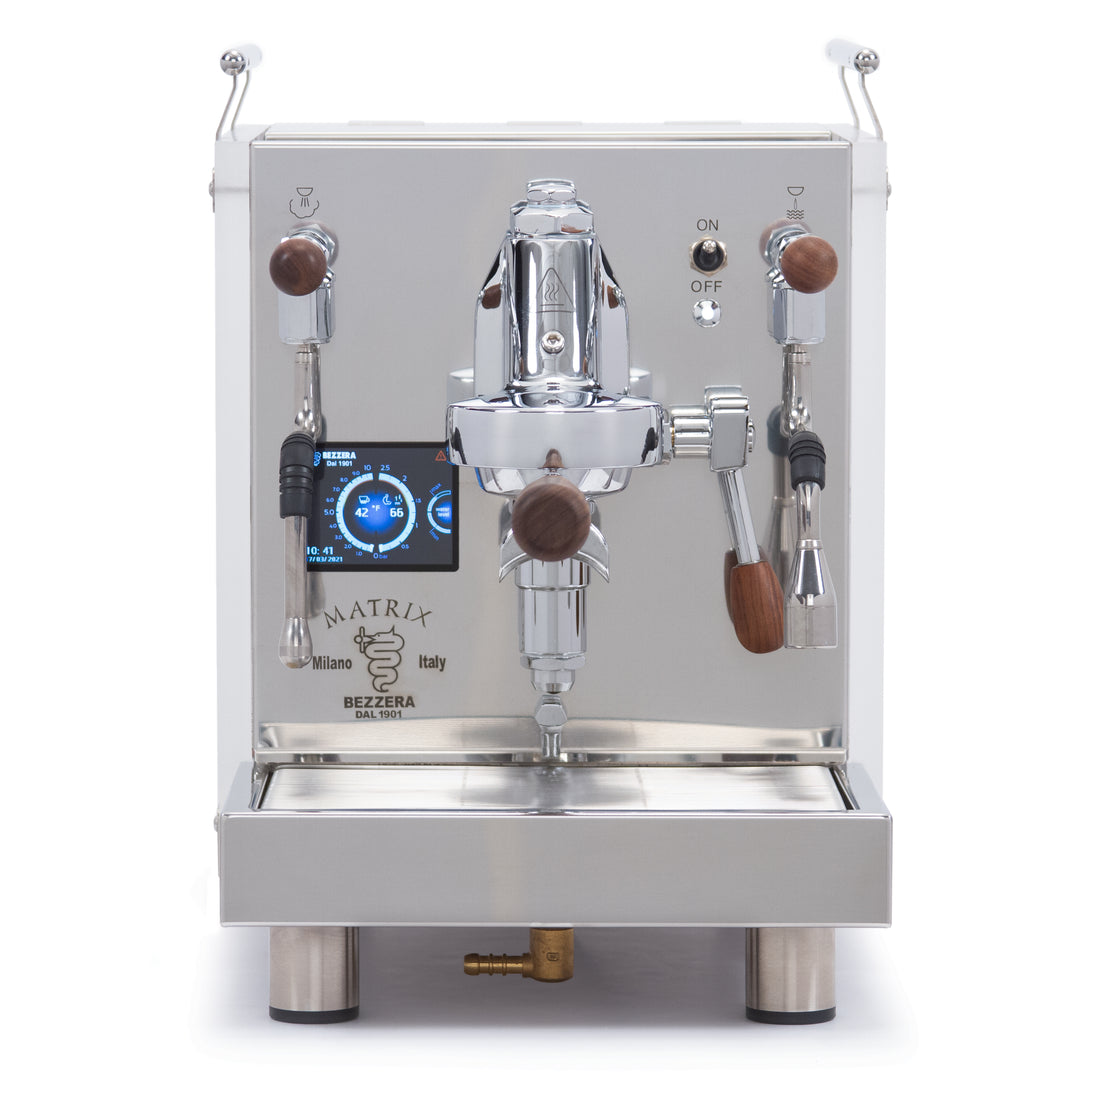 Bezzera Matrix MN Dual Boiler Espresso Machine